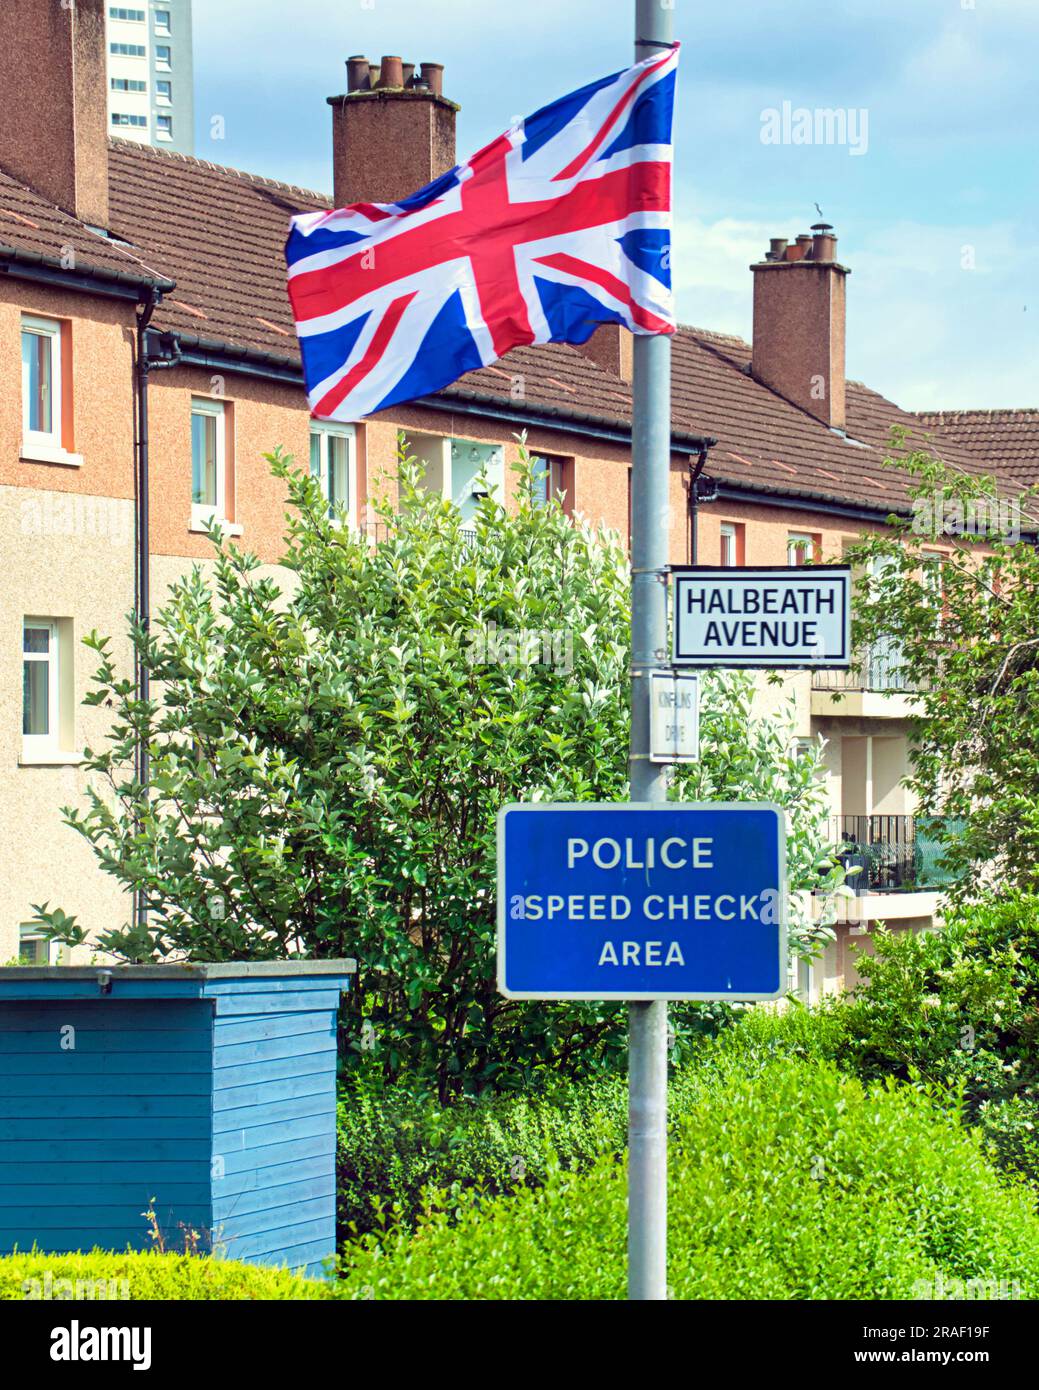 Polizeischnellprüfbereich der union Flag halbeath Avenue drumchapel Glasgow, Schottland, Vereinigtes Königreich Stockfoto